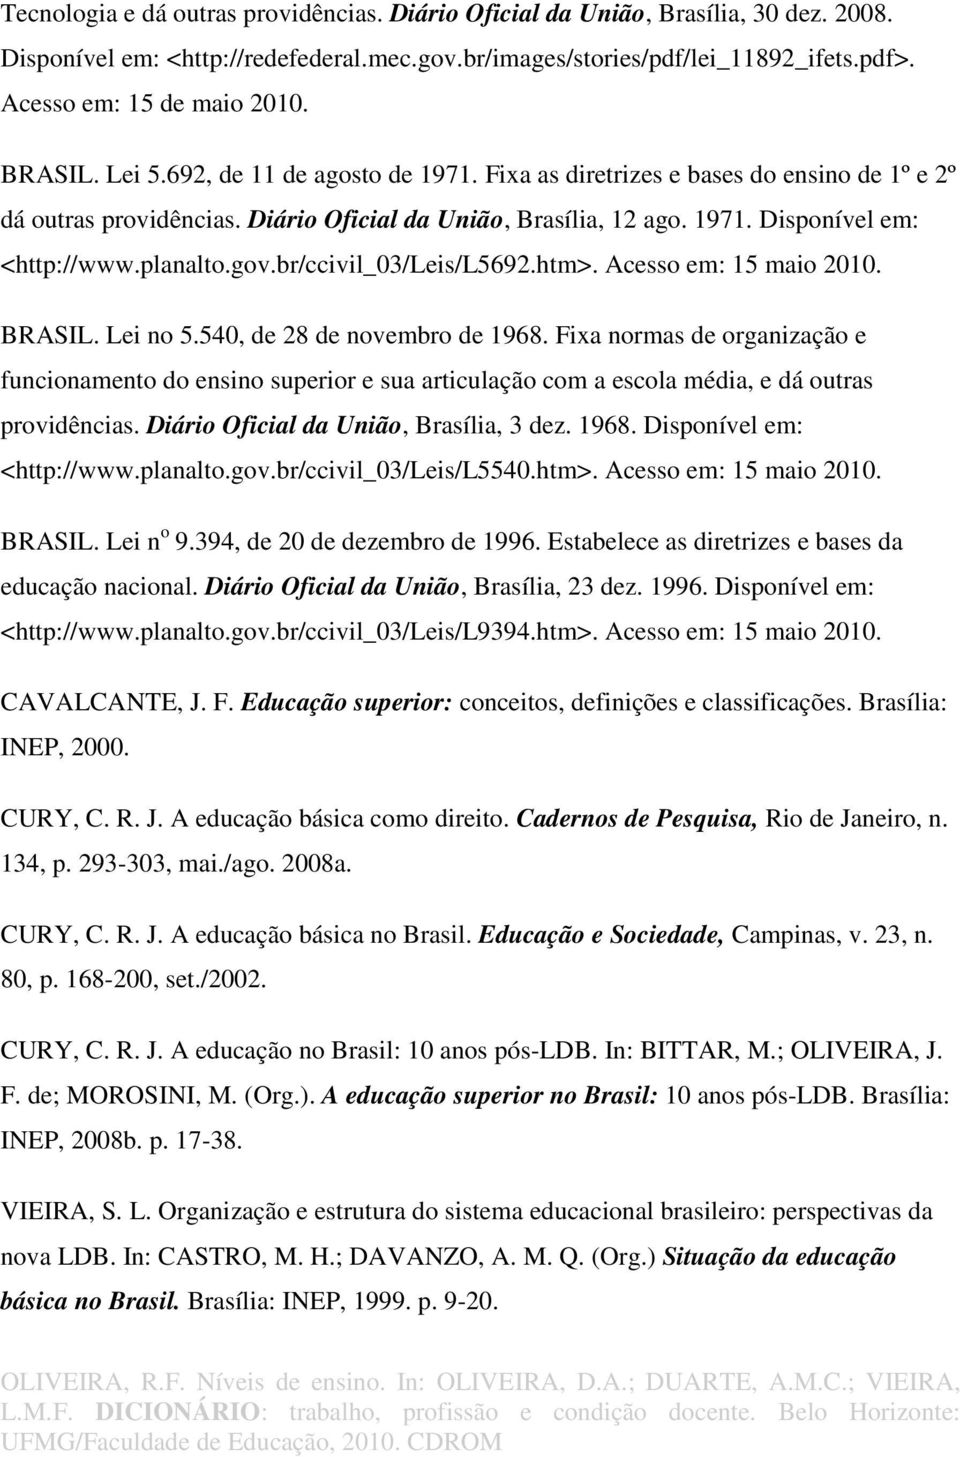 planalto.gov.br/ccivil_03/leis/l5692.htm>. Acesso em: 15 maio 2010. BRASIL. Lei no 5.540, de 28 de novembro de 1968.